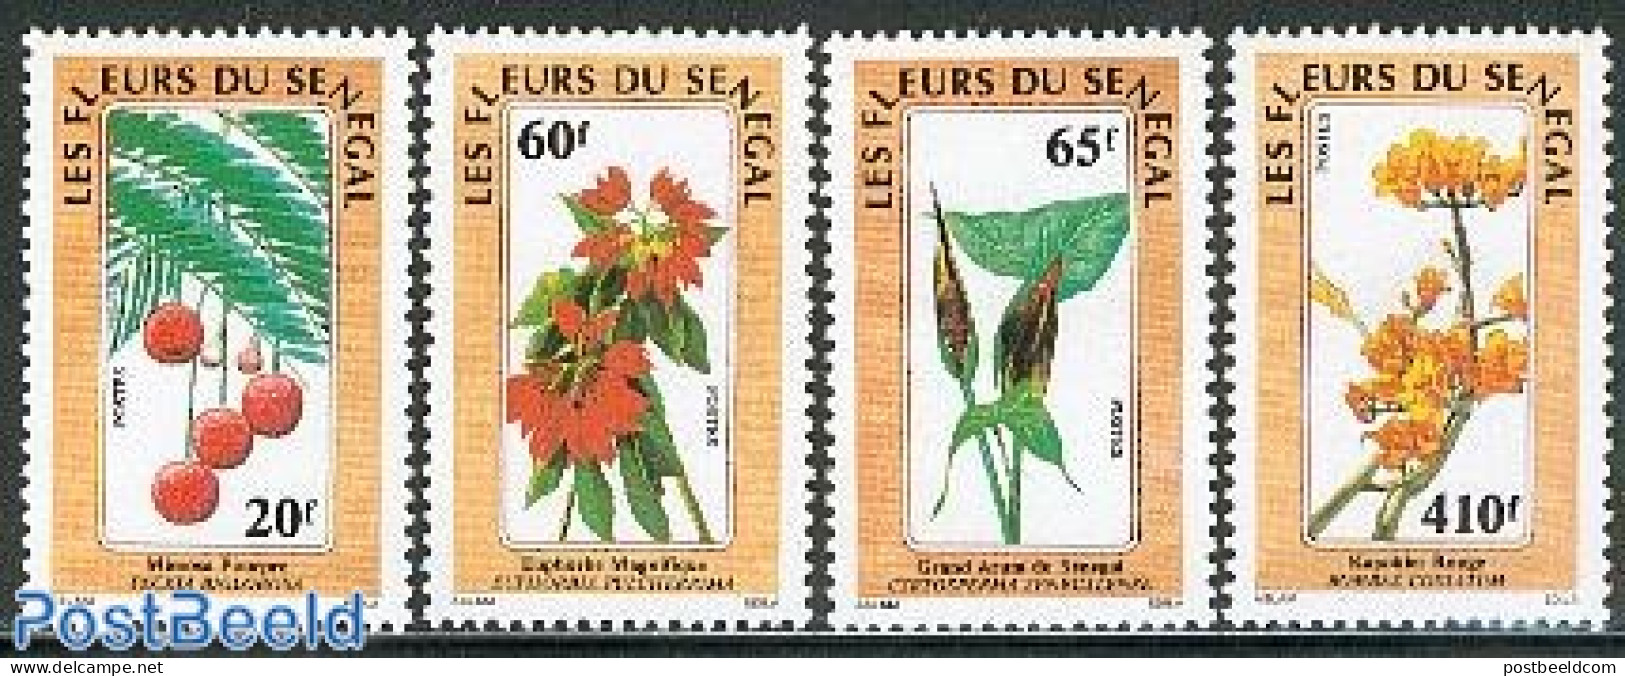 Senegal 1988 Flowers 4v, Mint NH, Nature - Flowers & Plants - Sénégal (1960-...)